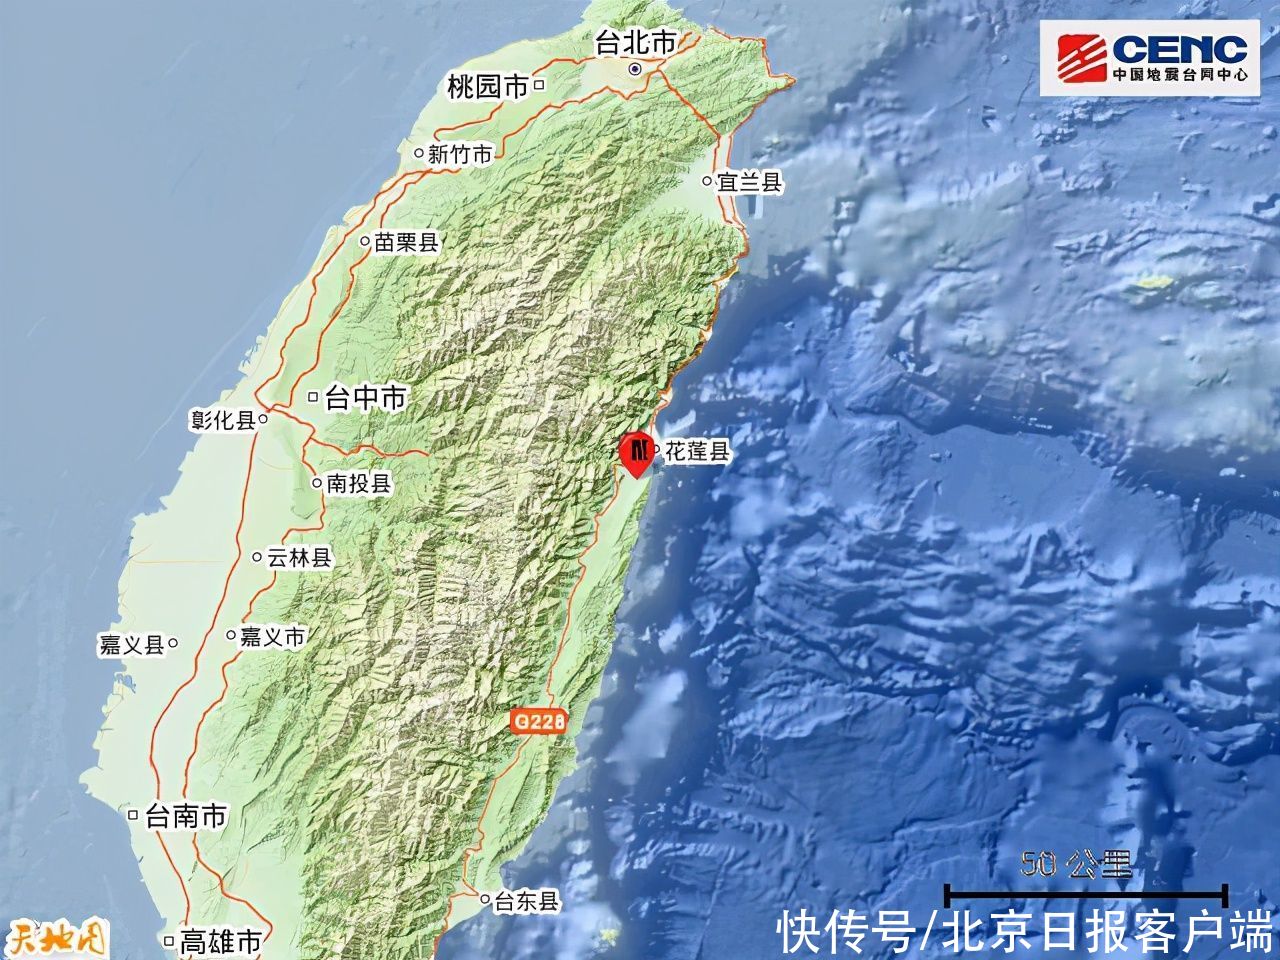 2022年1月4日7时17分在台湾花莲县海域发生48级地震图为全球板块示意图读图，完成下列问题